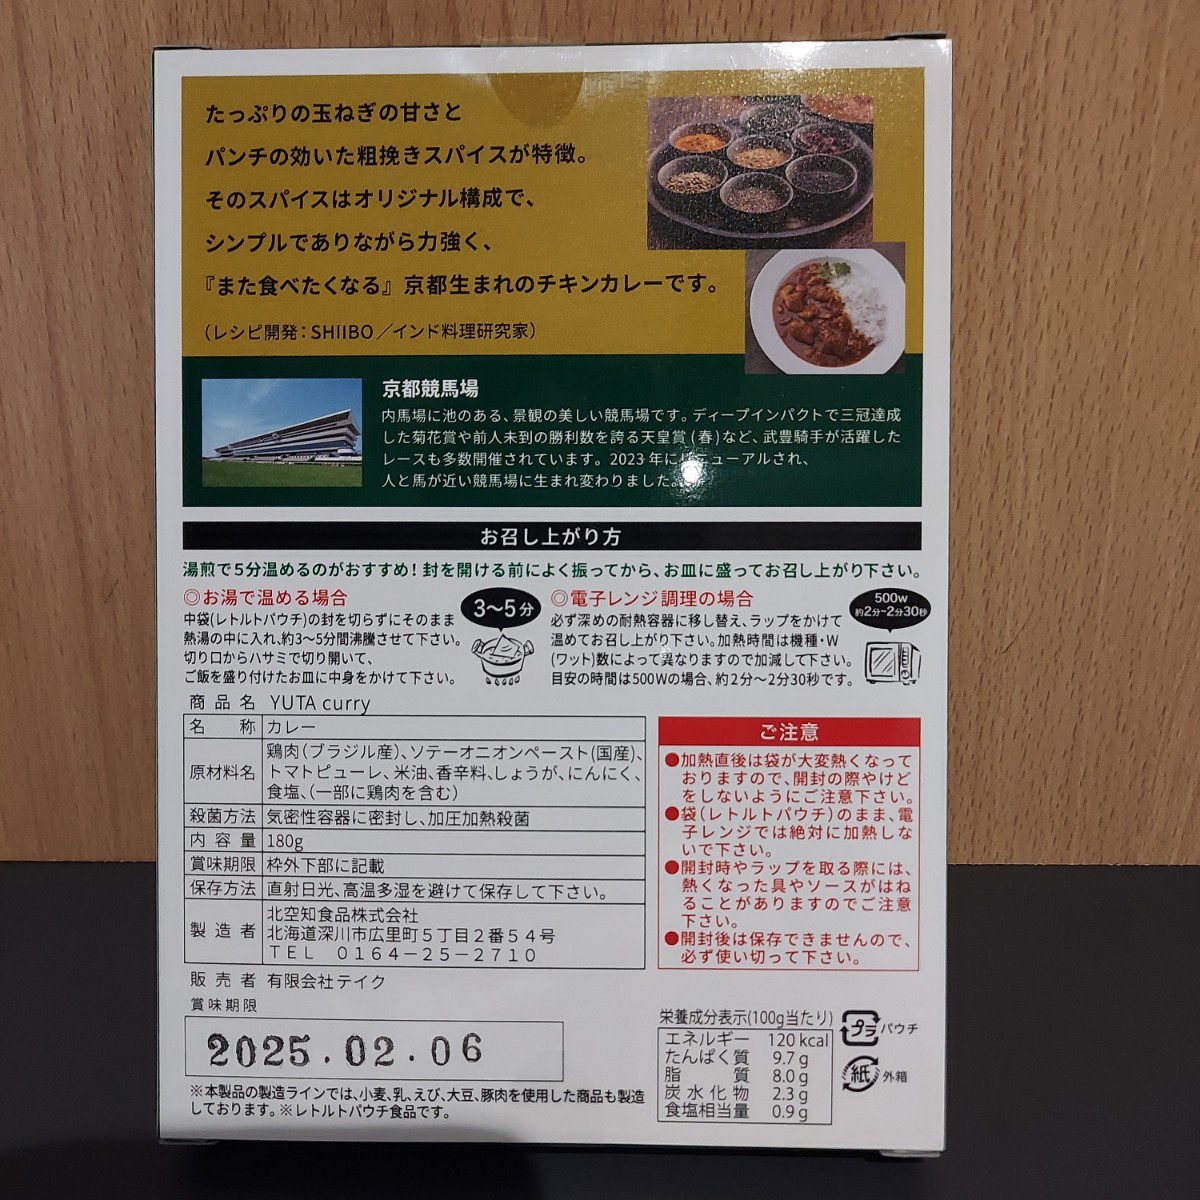 .. карри Kyoto скачки место определенные товары 1 шт *chi gold карри соус карри в пакете YUTA curryyuta карри калории off ..